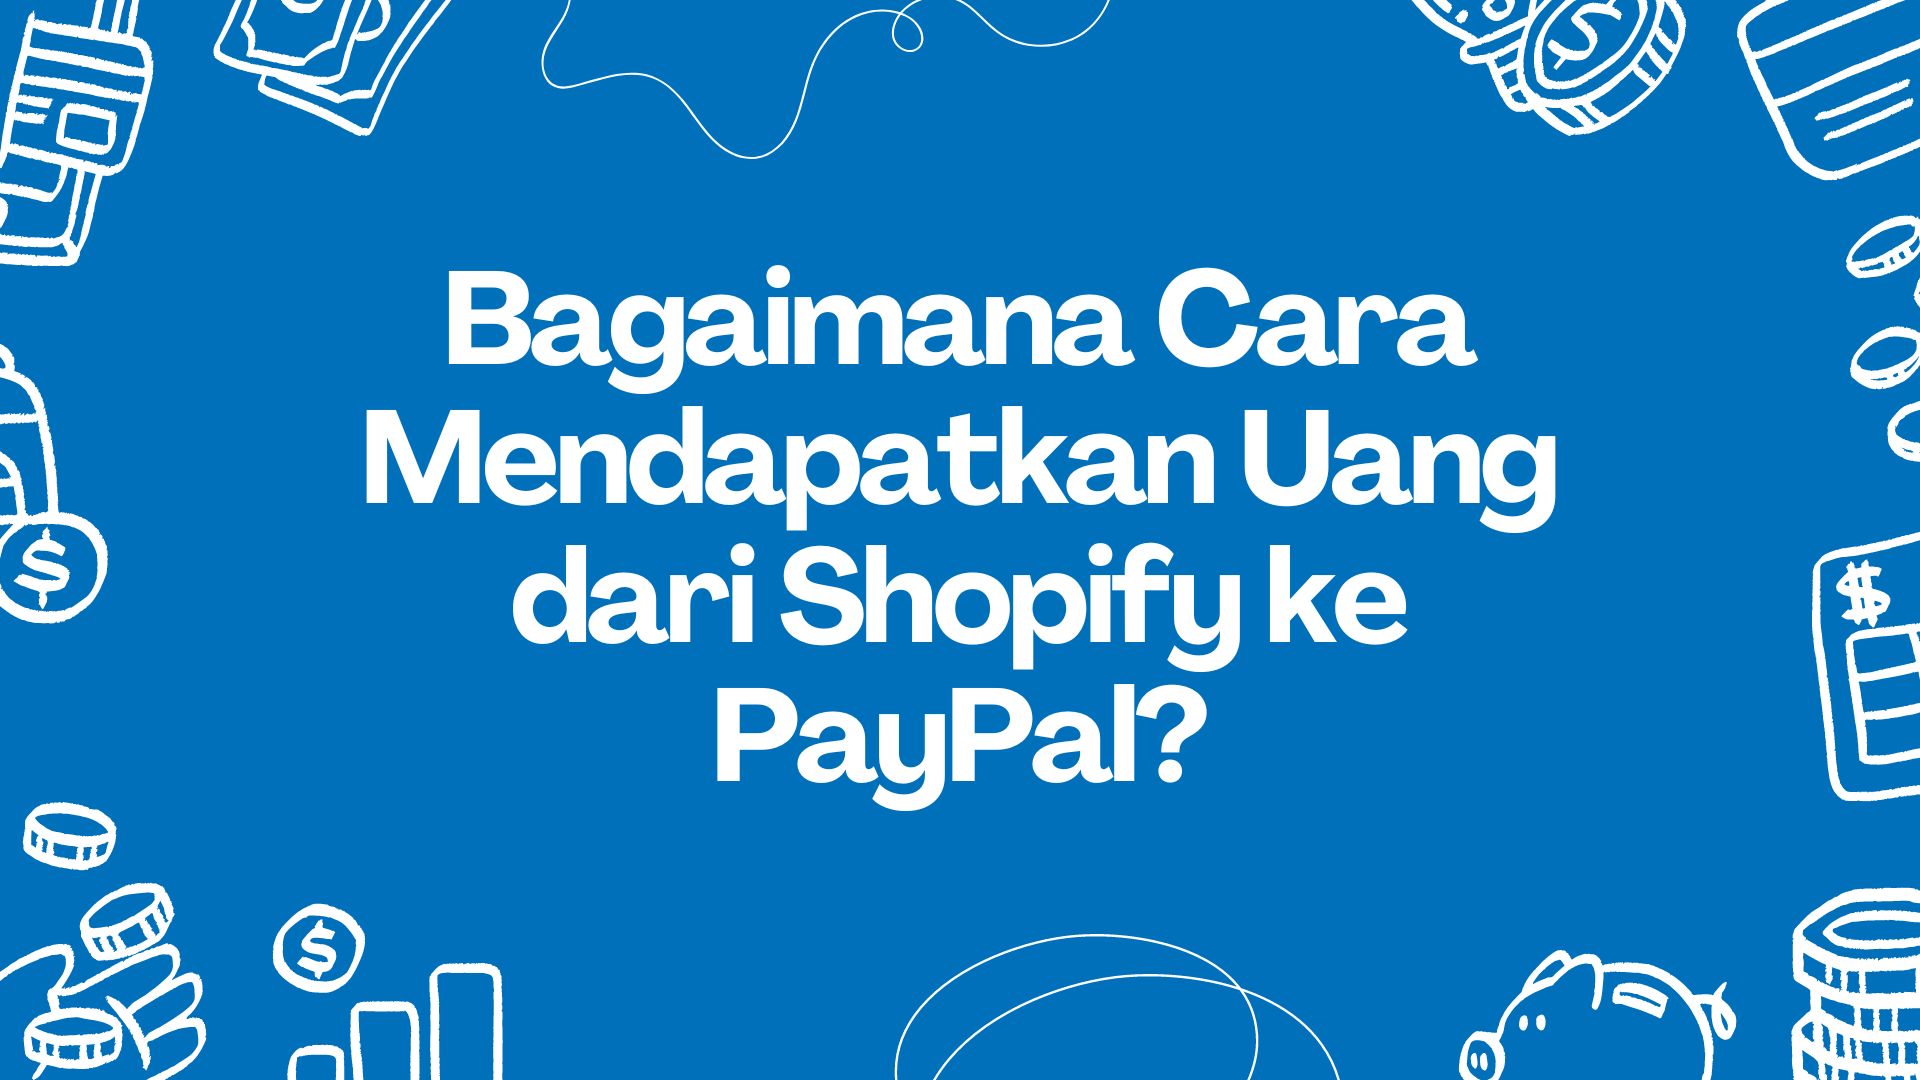 Bagaimana Cara Mendapatkan Uang dari Shopify ke PayPal?